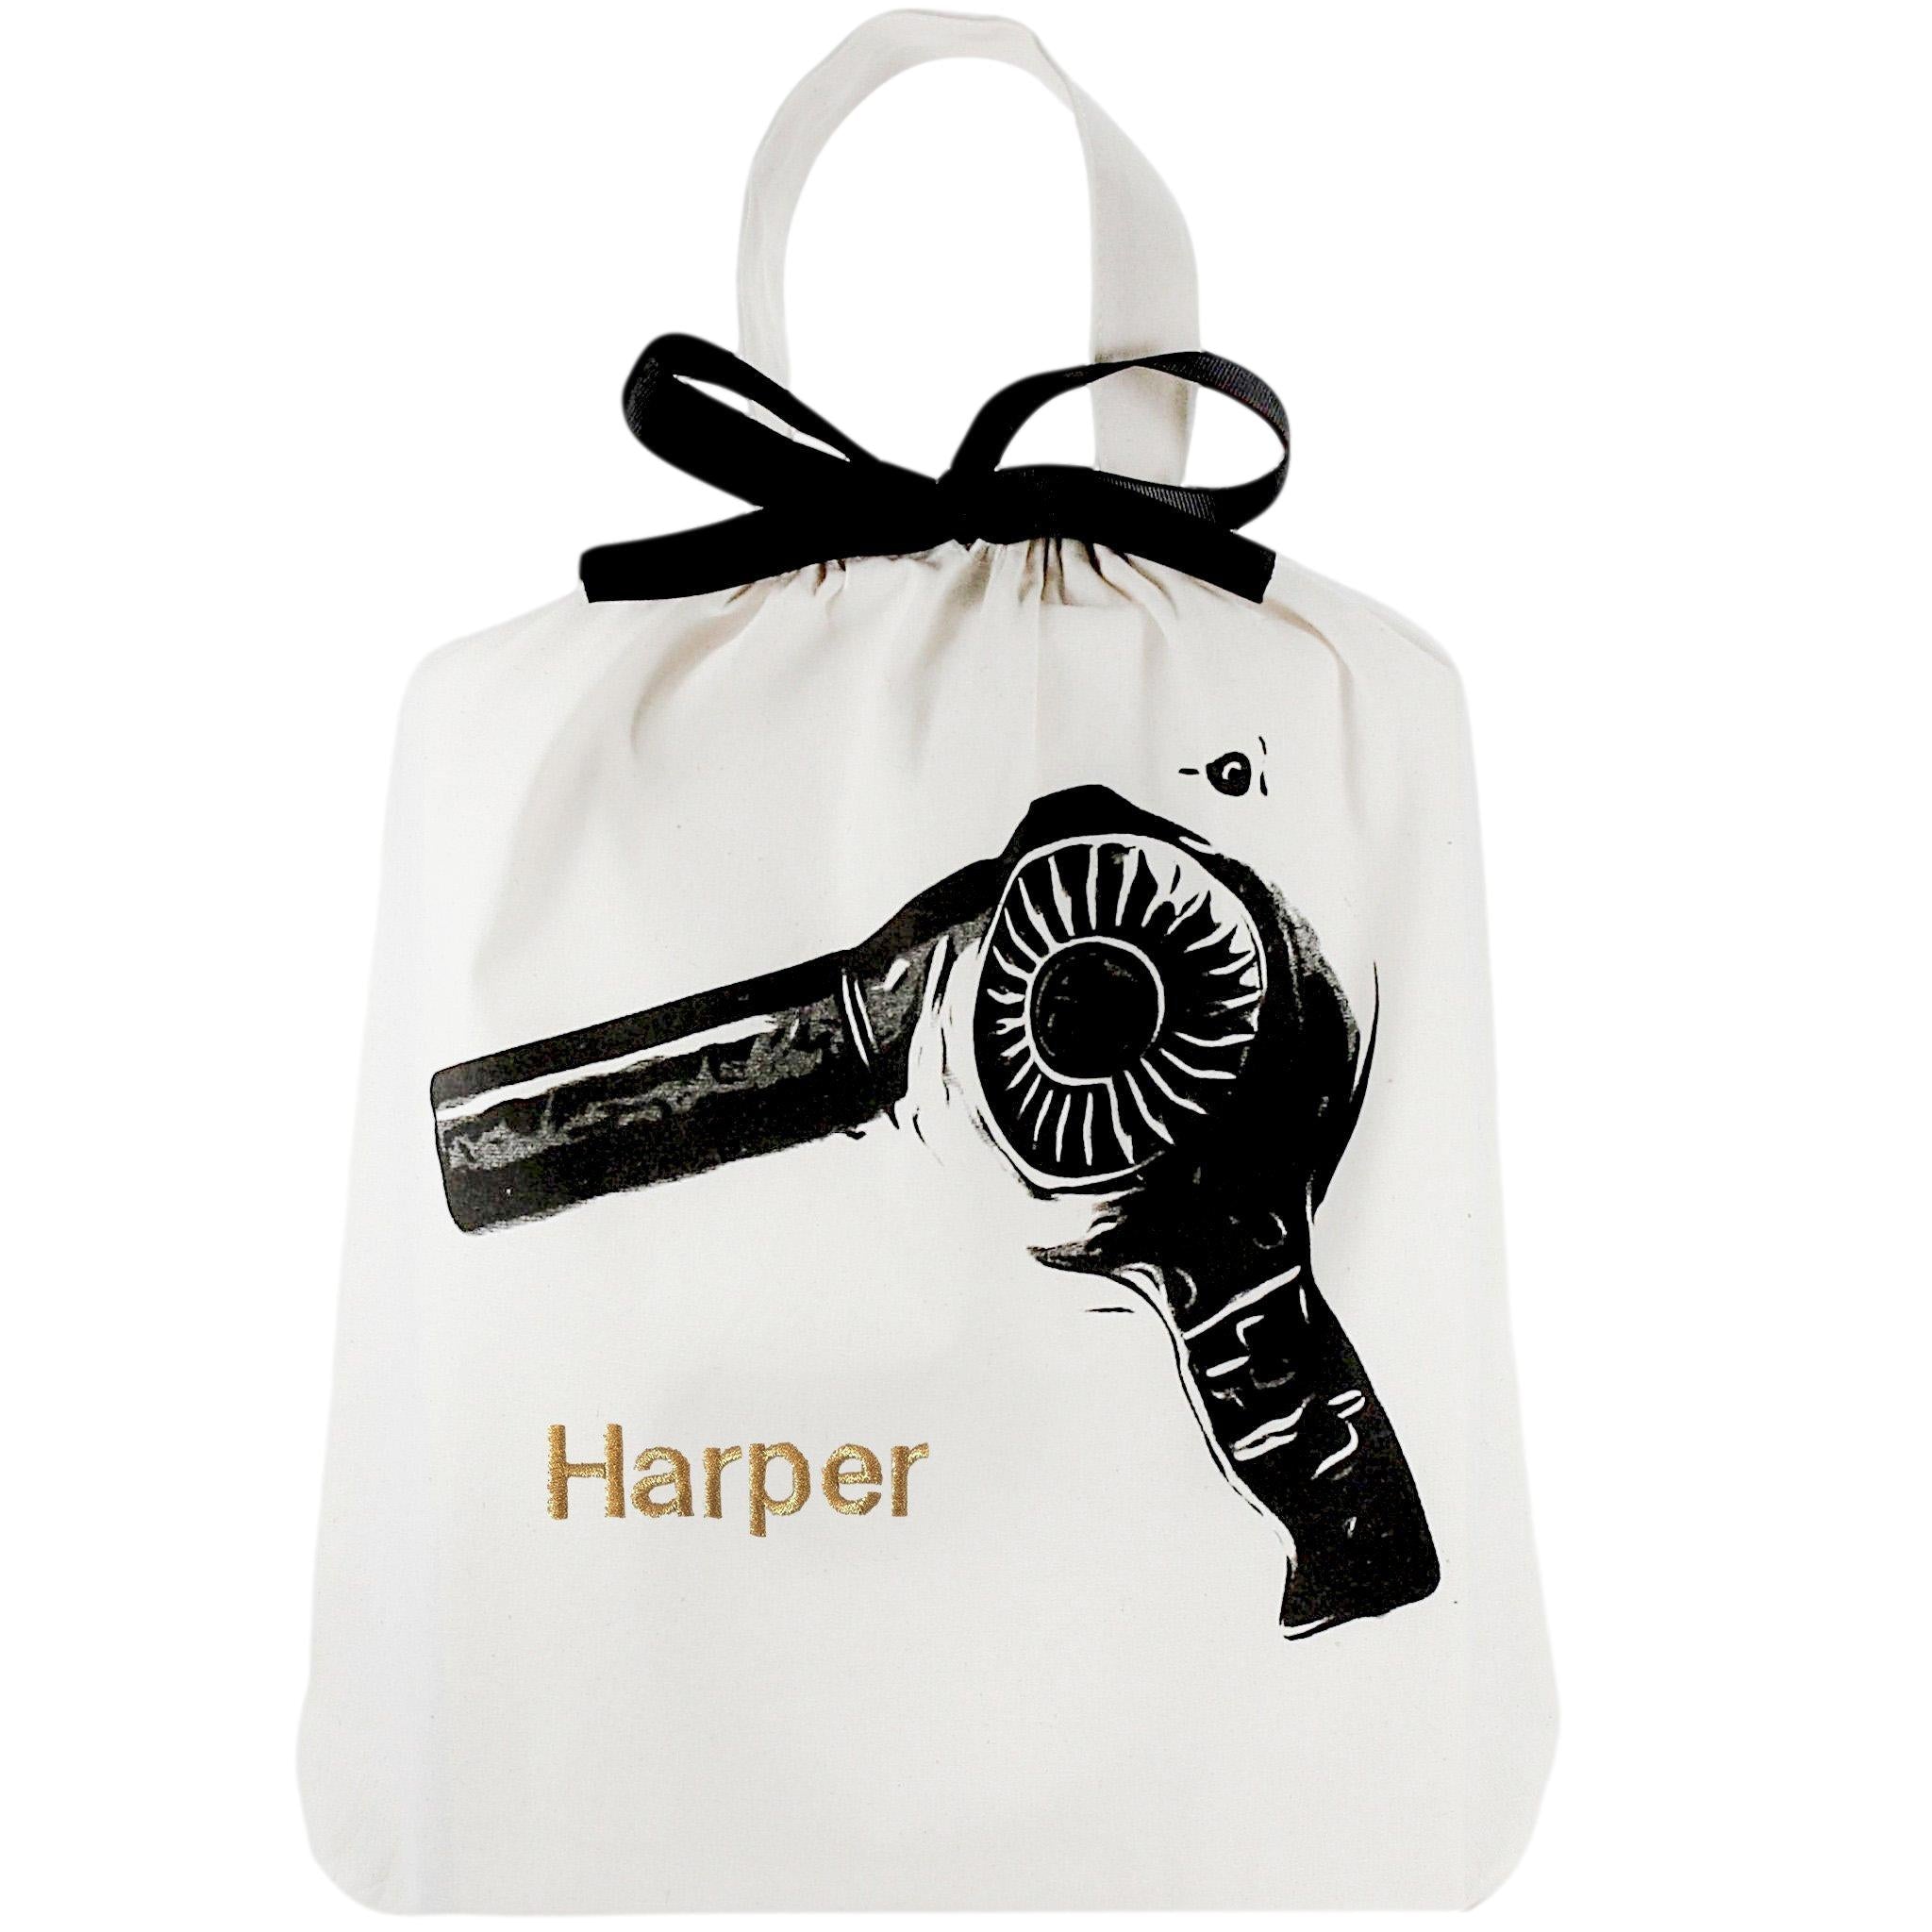 Sac pour sèche-cheveux pour votre sèche-cheveux avec "harper" personnalisé sur le devant.